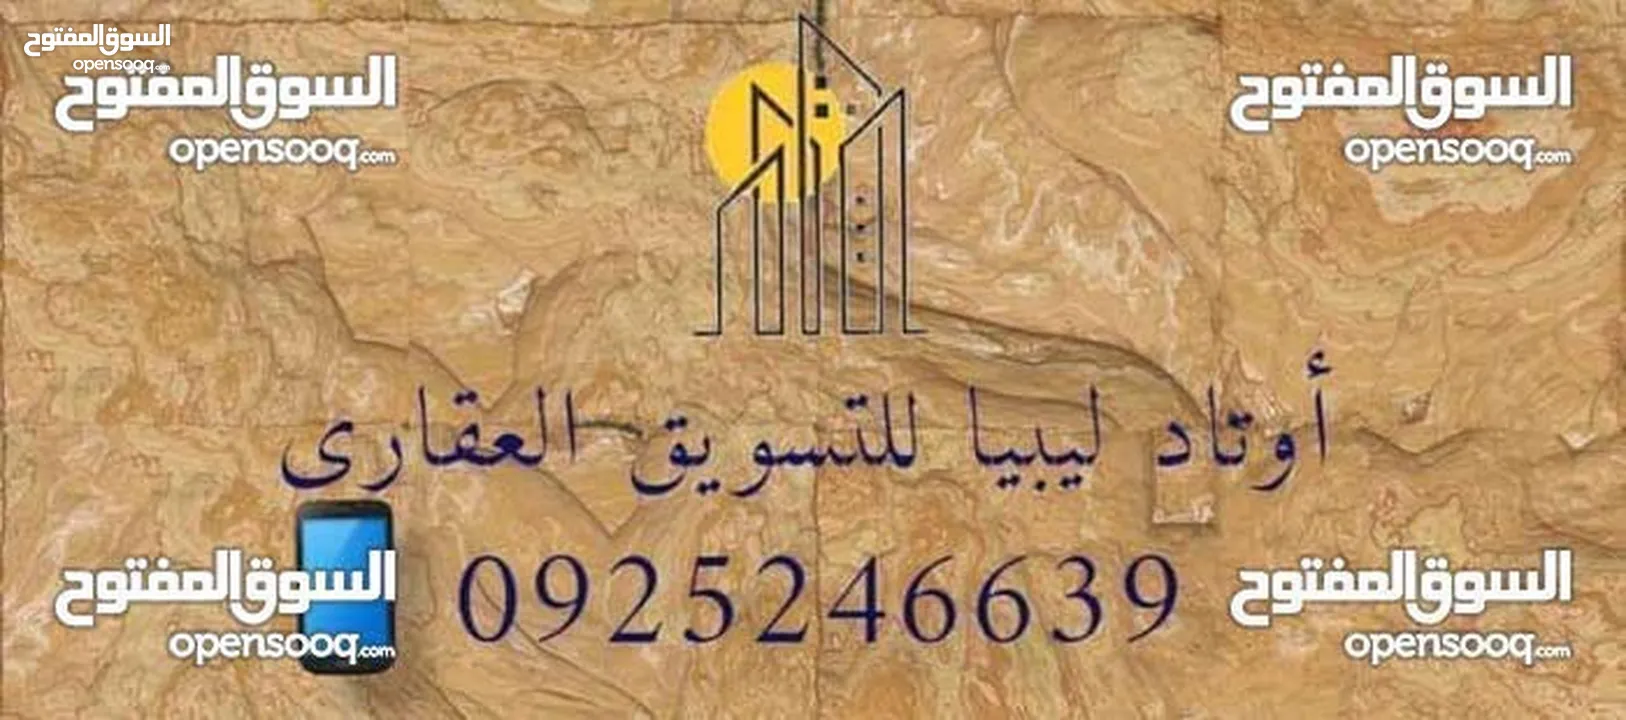 أرض تجارية للبيع  1400 متر زاوية الدهماني / بالقرب من الإذاعة موقع استثماري ممتاز